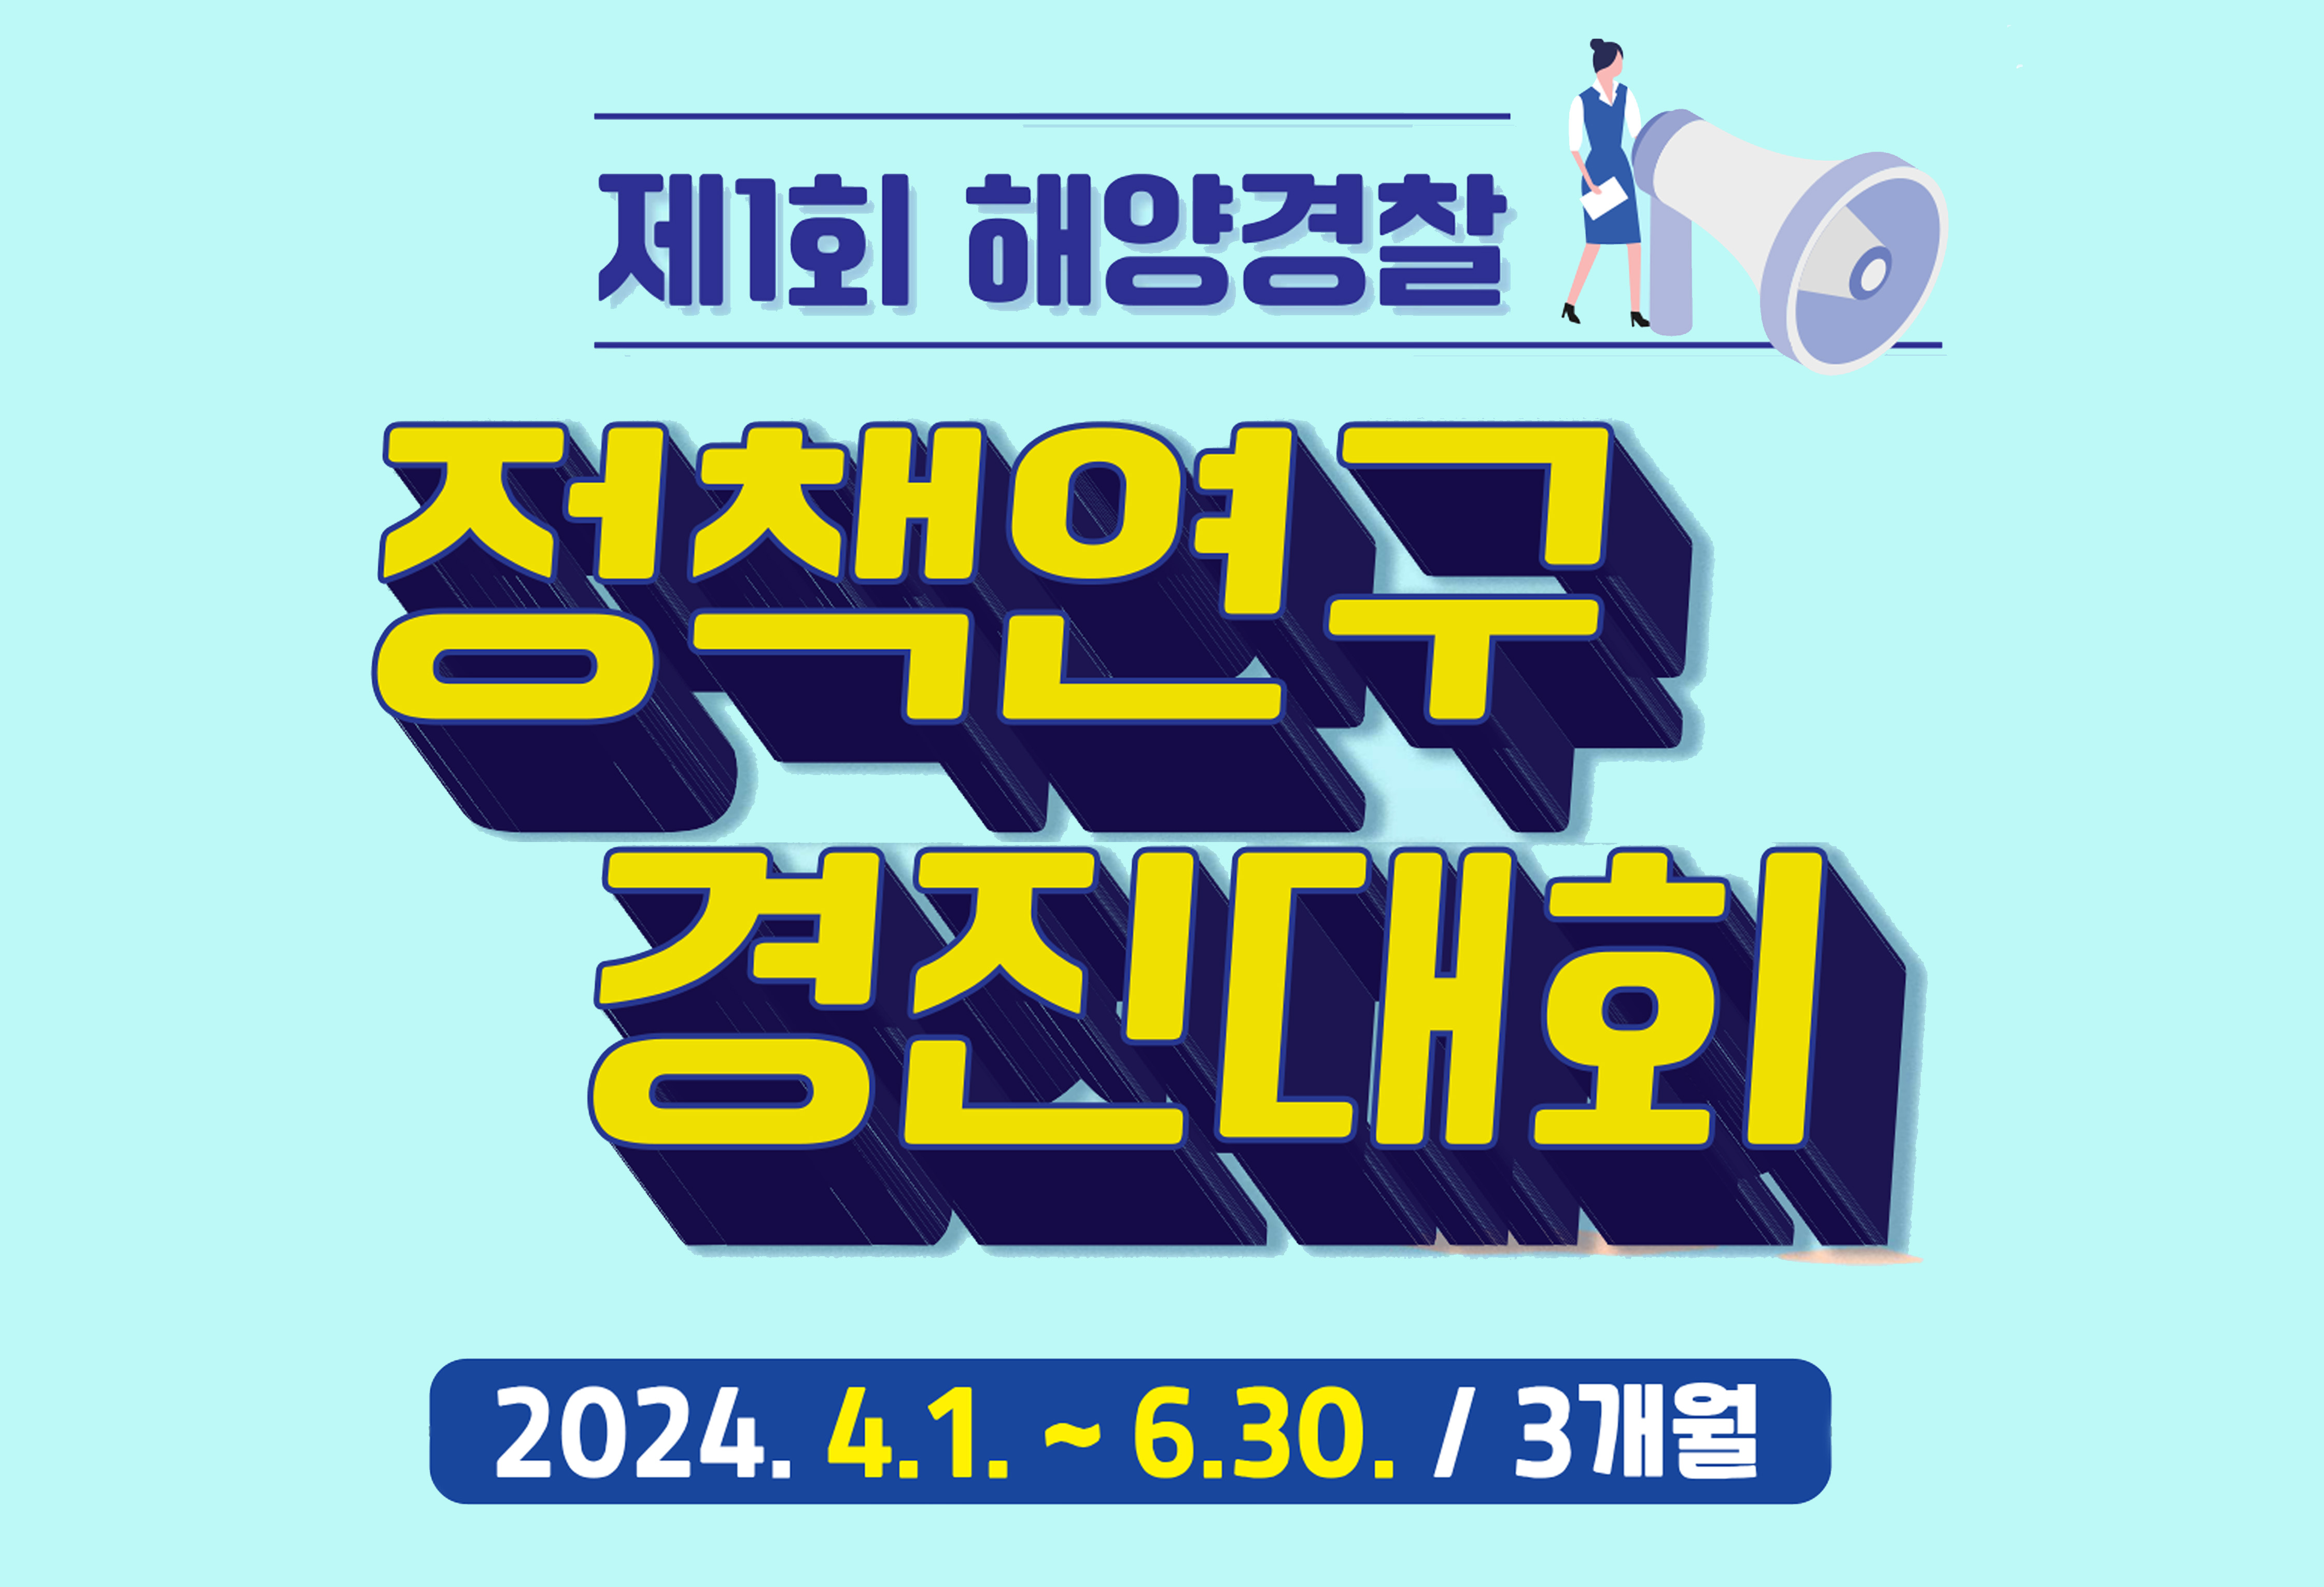 제1회 해양경찰 정책연구 경진대회
2024. 4. 1.~6.30.(3개월)